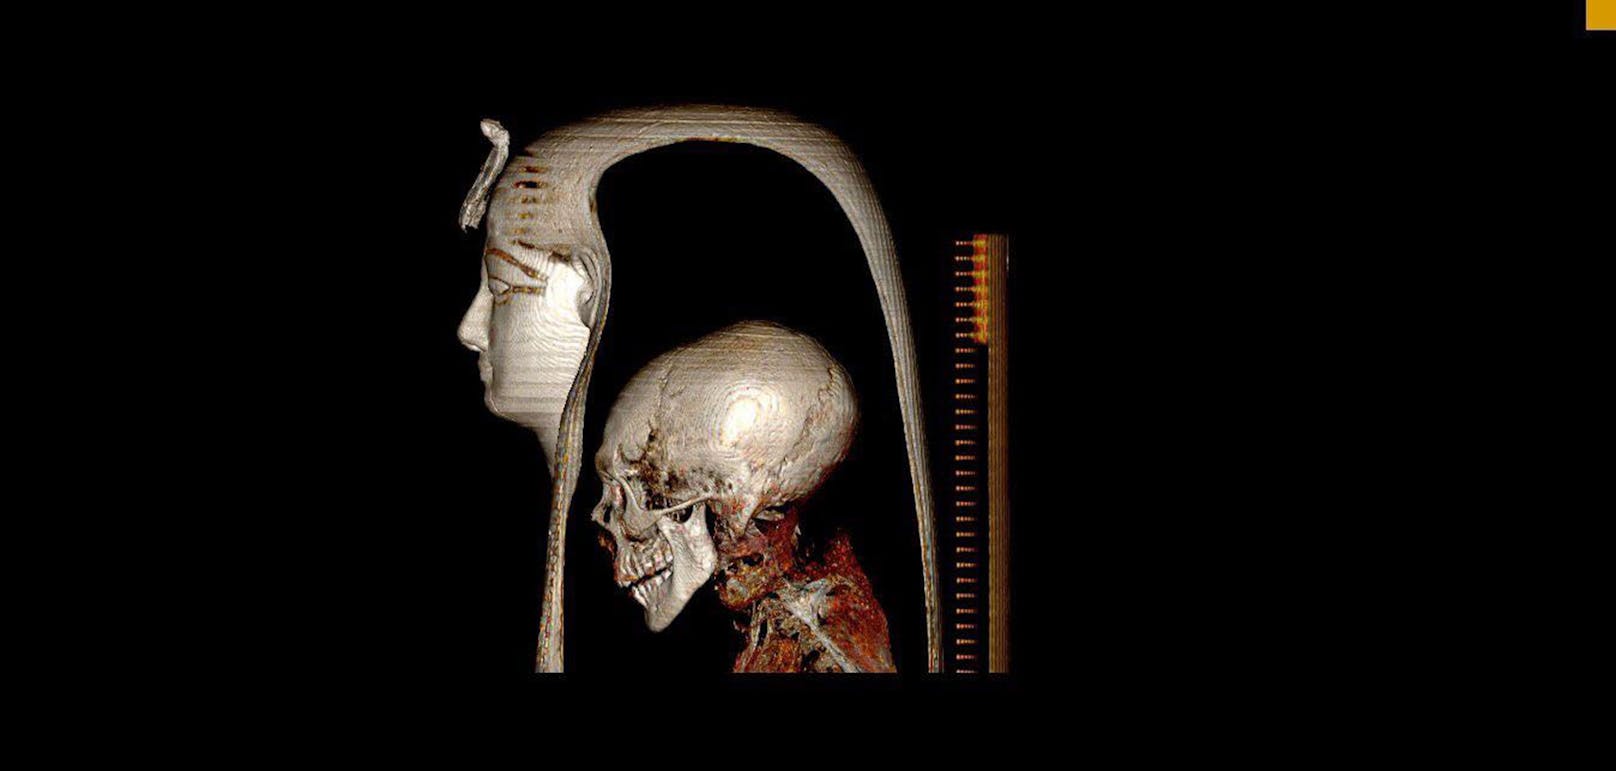 Die dreidimensionale CT-Aufnahme des Kopfes der gewickelten Mumie von Amenhotep I in linkslateraler Ansicht ermöglicht die Visualisierung der Komponentenschichten: der Maske, des Kopfes der Mumie und der umgebenden Verbände.